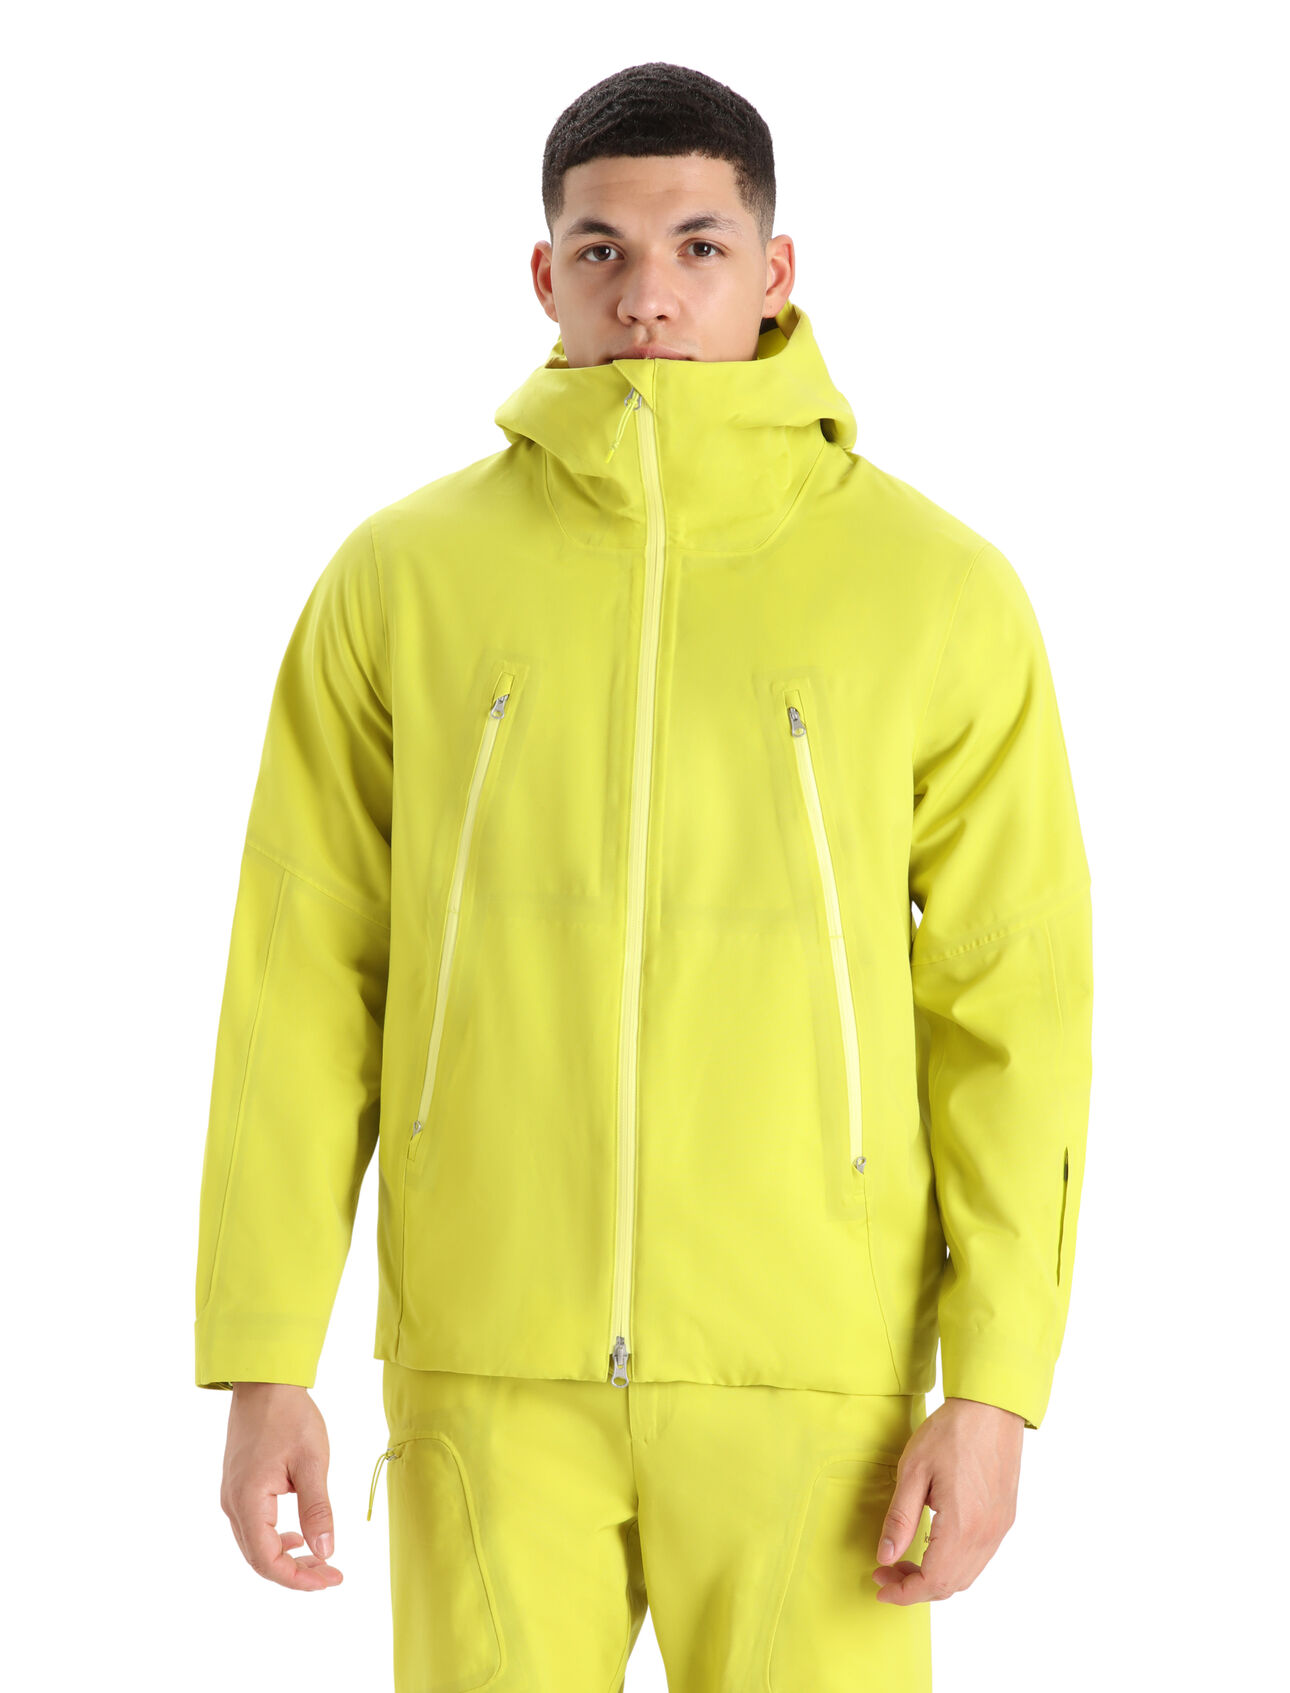 Shell+™ Merino Hooded Jacket